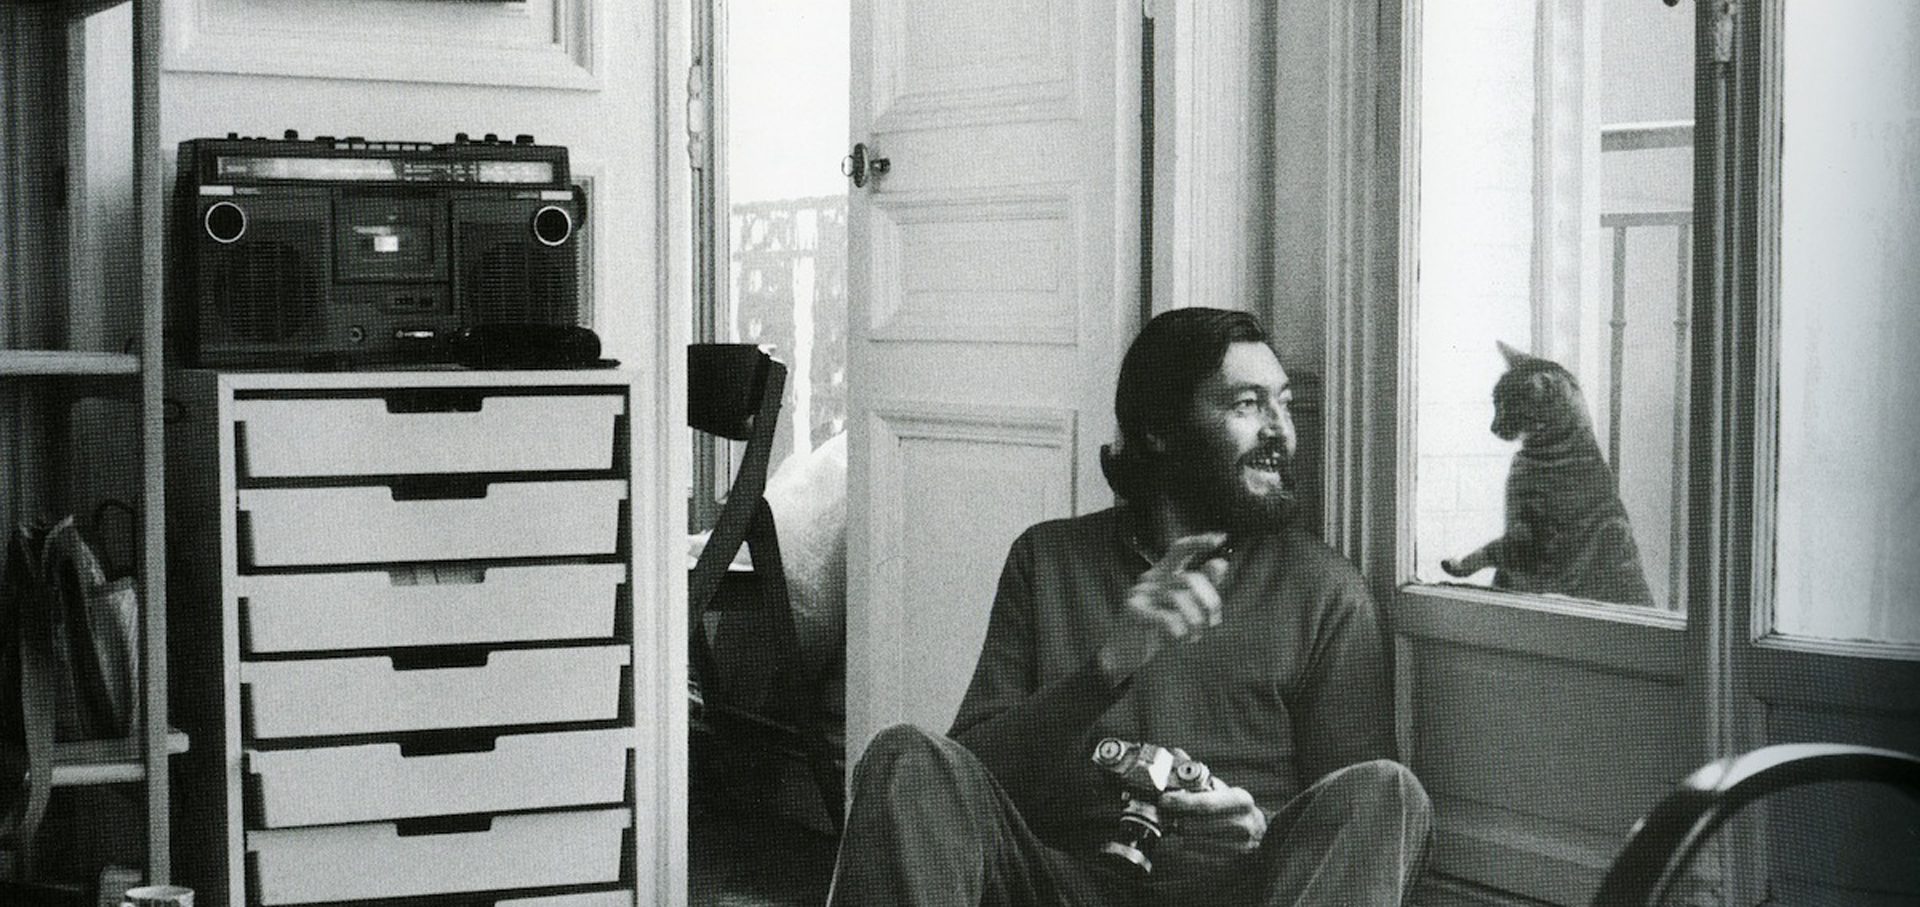 Imagen de Julio Cortázar sentado y conversando con un gato